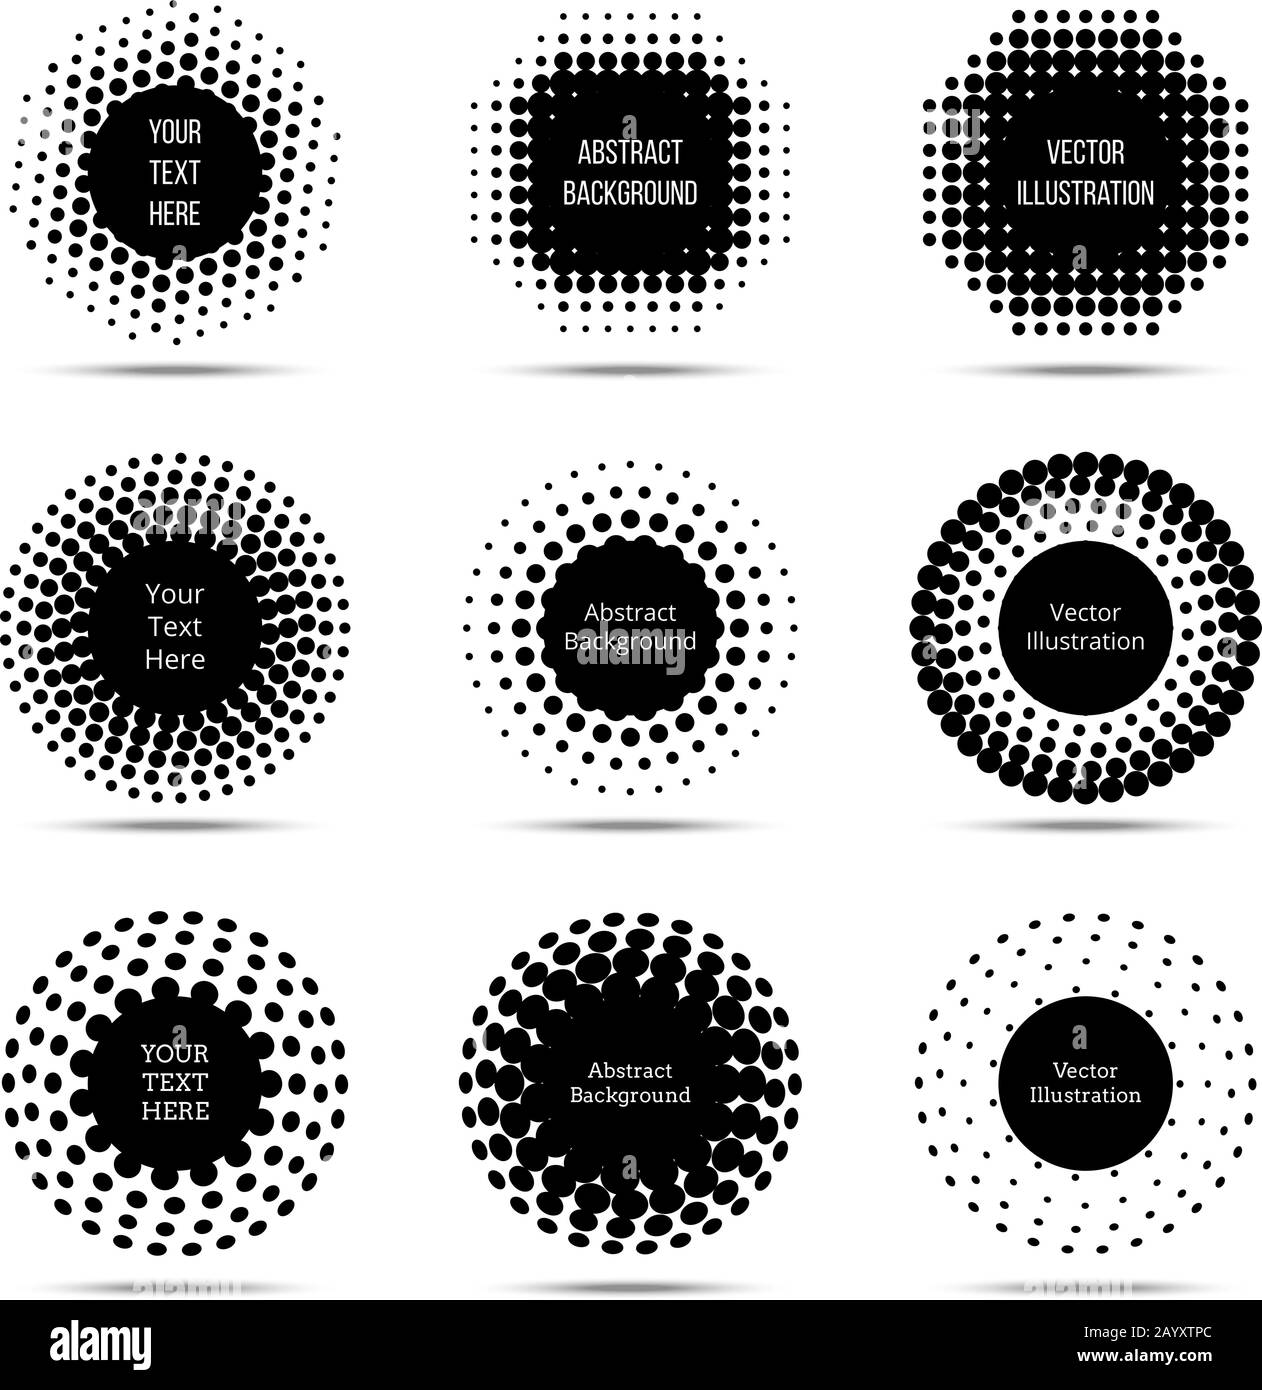 Elementi vettoriali di design tondi mezzitoni. Set di banner pop art circolari. Elemento monocromatico con illustrazione dei punti neri Illustrazione Vettoriale